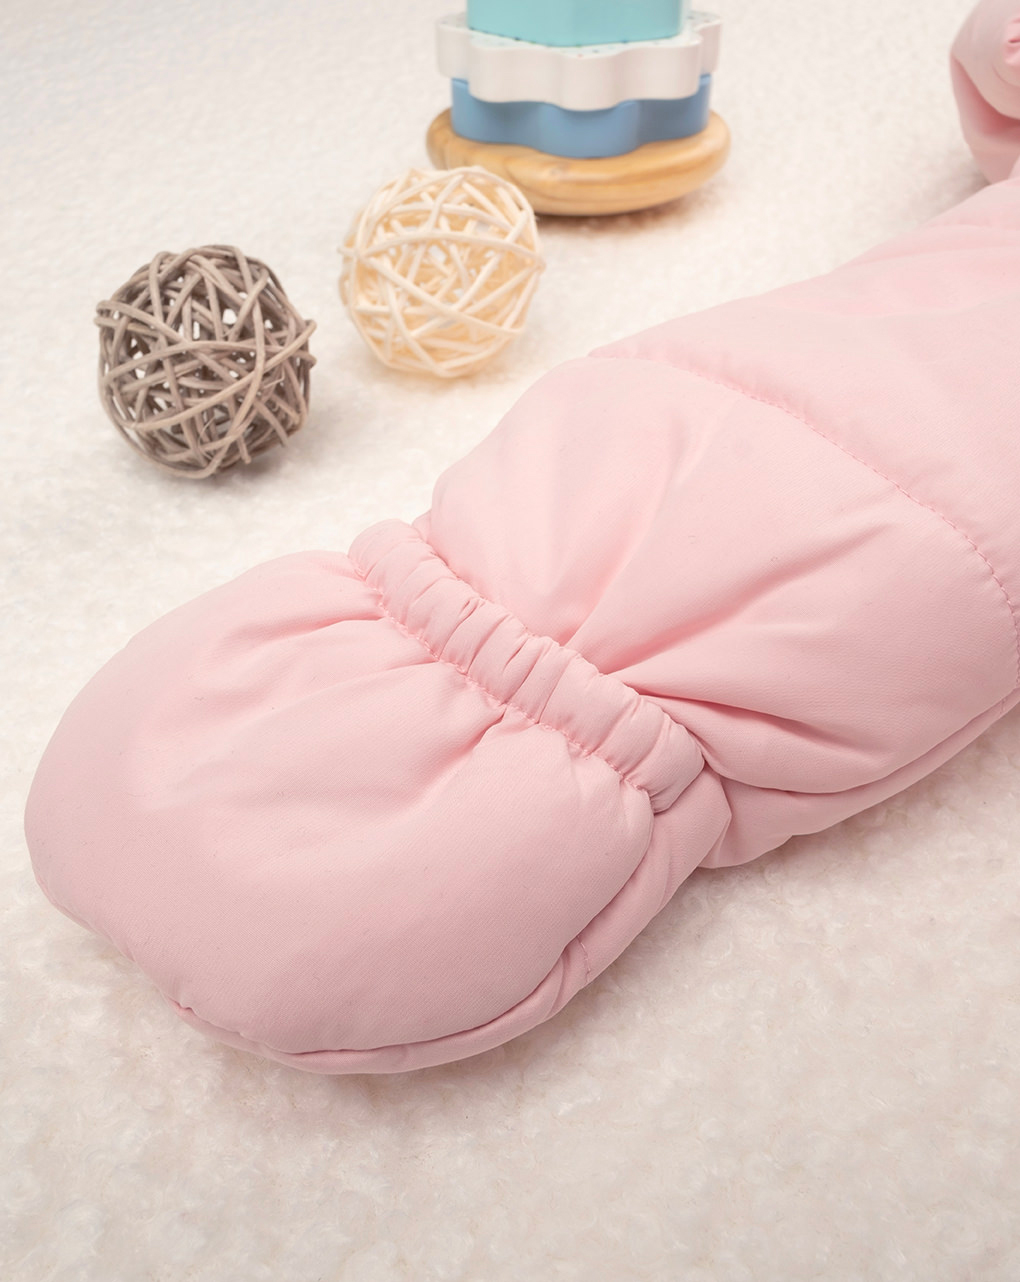 Saco de neve rosa para bebé menina - Prénatal